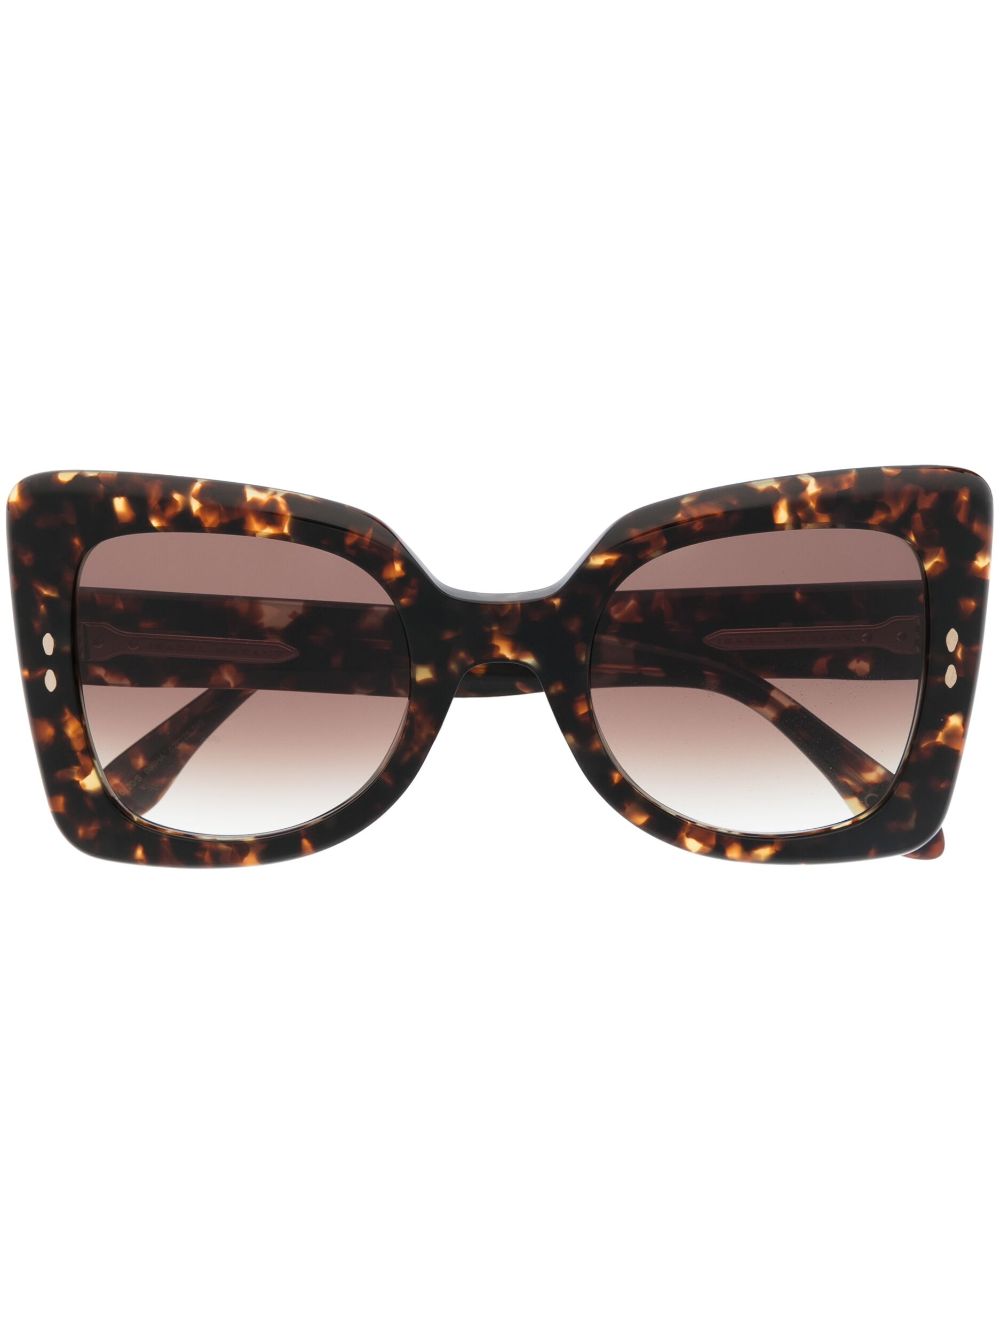 Isabel Marant Eyewear oversize-frame tortoiseshell sunglasses - Brown von Isabel Marant Eyewear